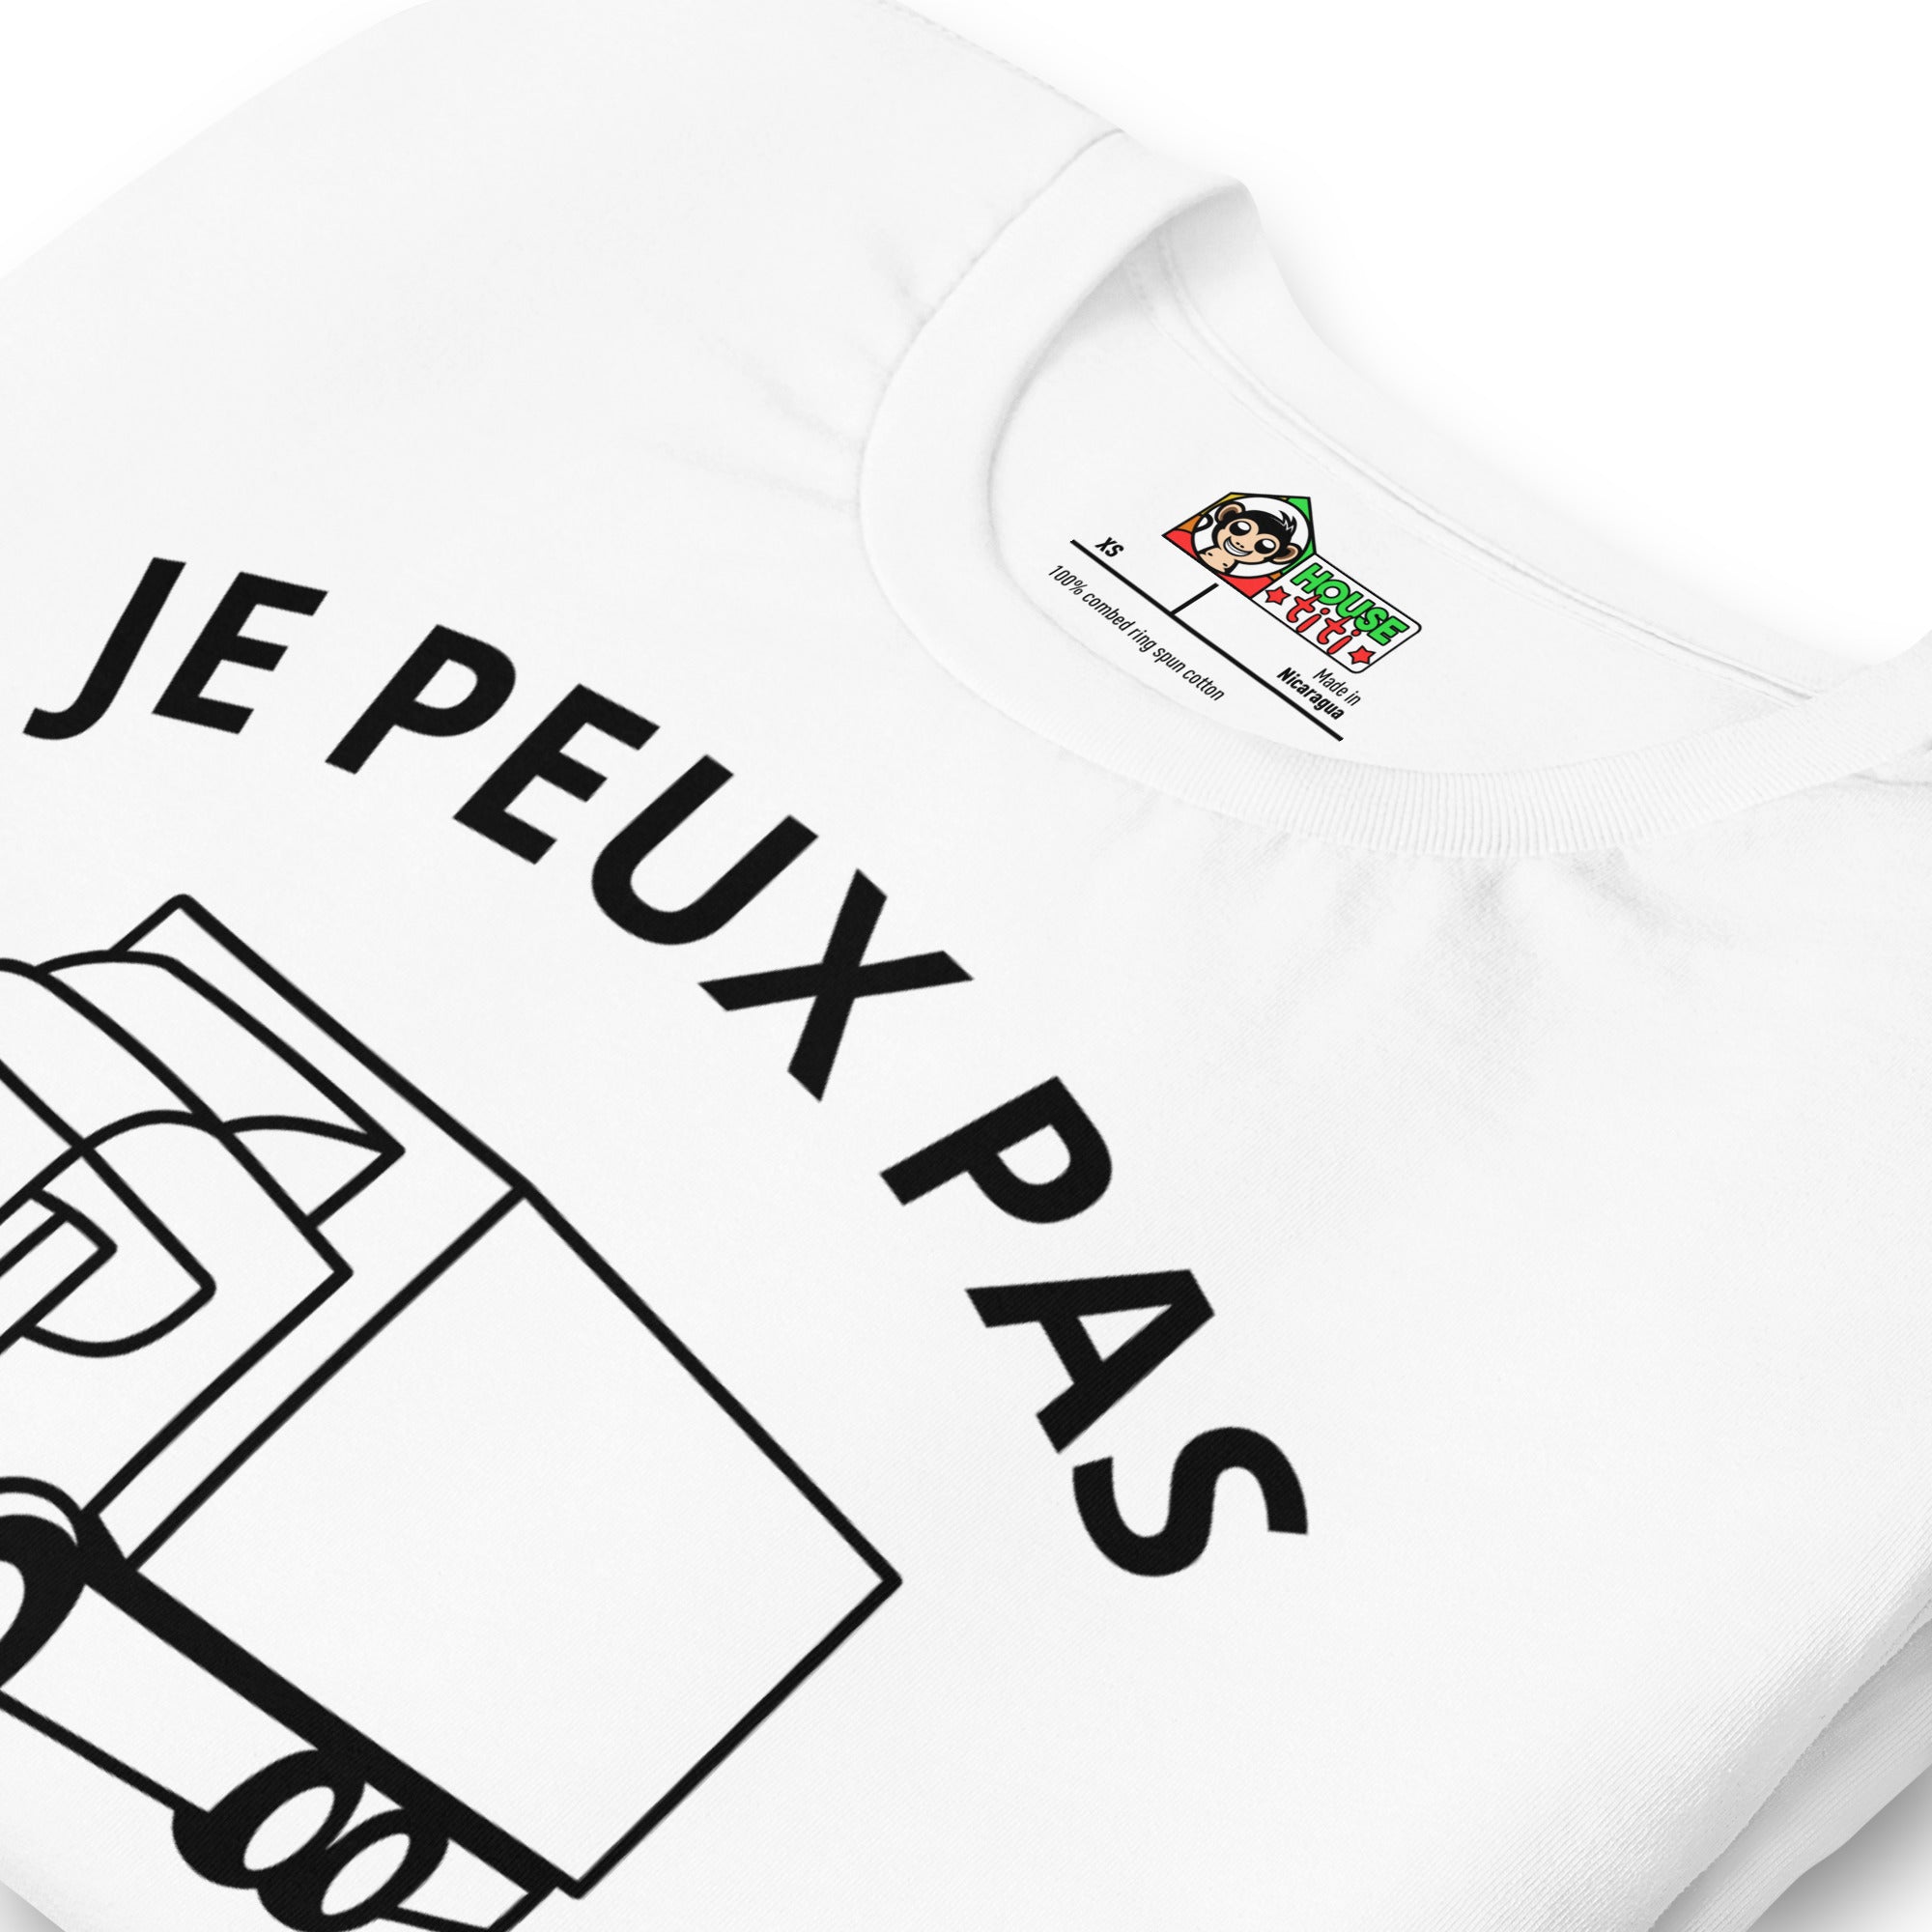 T-shirt unisexe Je Peux Pas J'ai De La Route (Lettrage foncé)